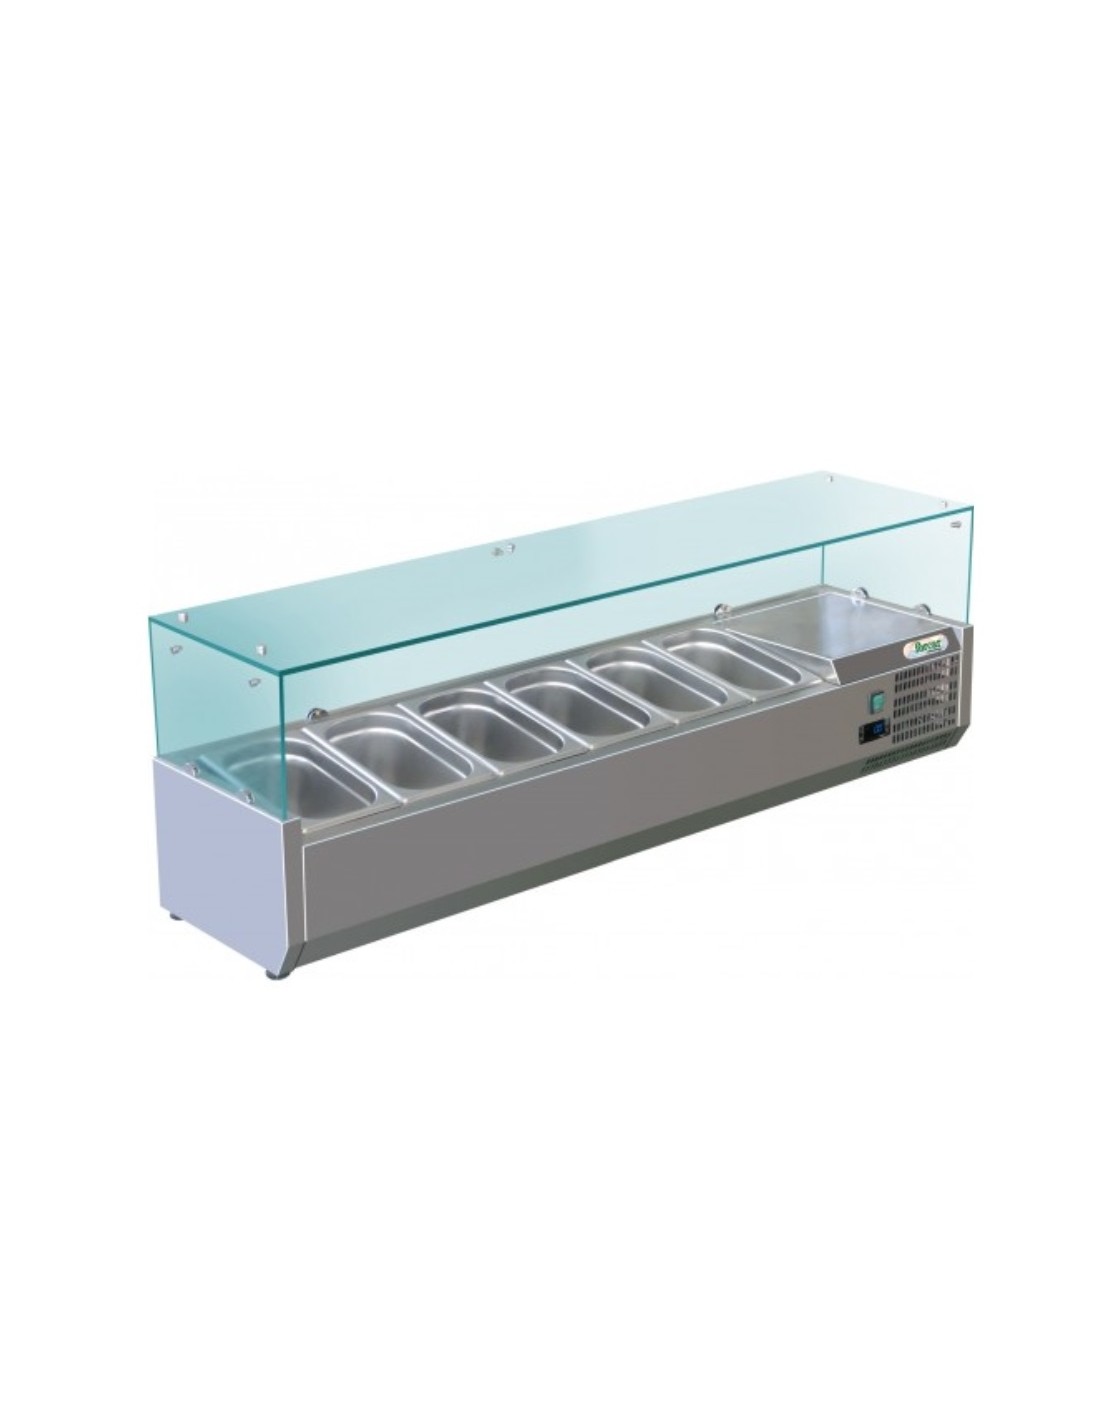 Vitrina refrigerada estante para ingredientes - Estático - Capacidad 6 bandejas GN 1/4 - cm 140 x 33 x 44,5h